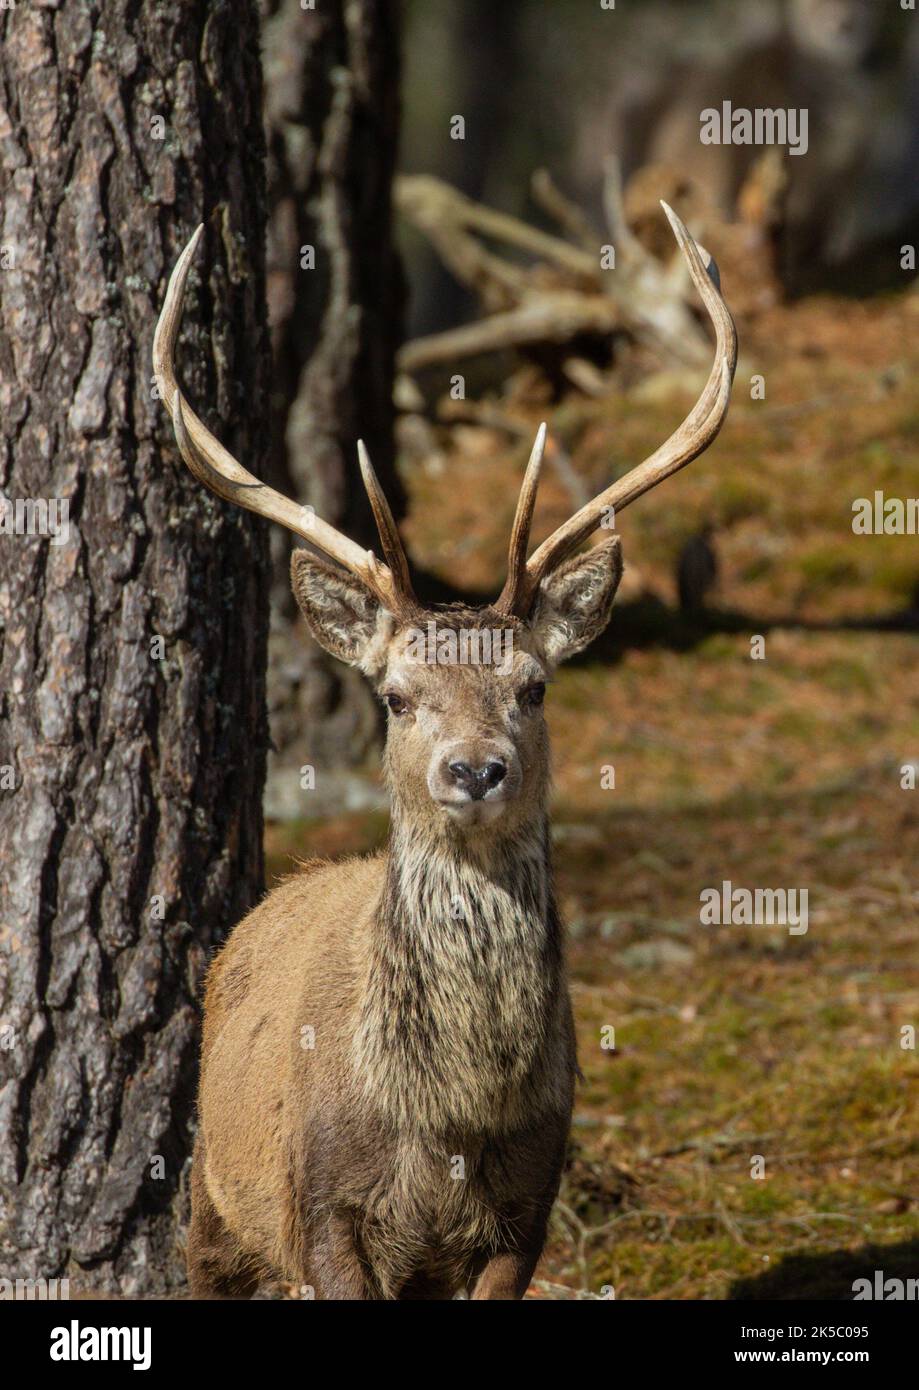 Ein majestätischer Rothirsch-Hirsch (Cervus elaphus), der stolz im kaledonischen Kiefernwald steht. Blick direkt auf die Kamera .Cairngorms , Schottland, Großbritannien Stockfoto